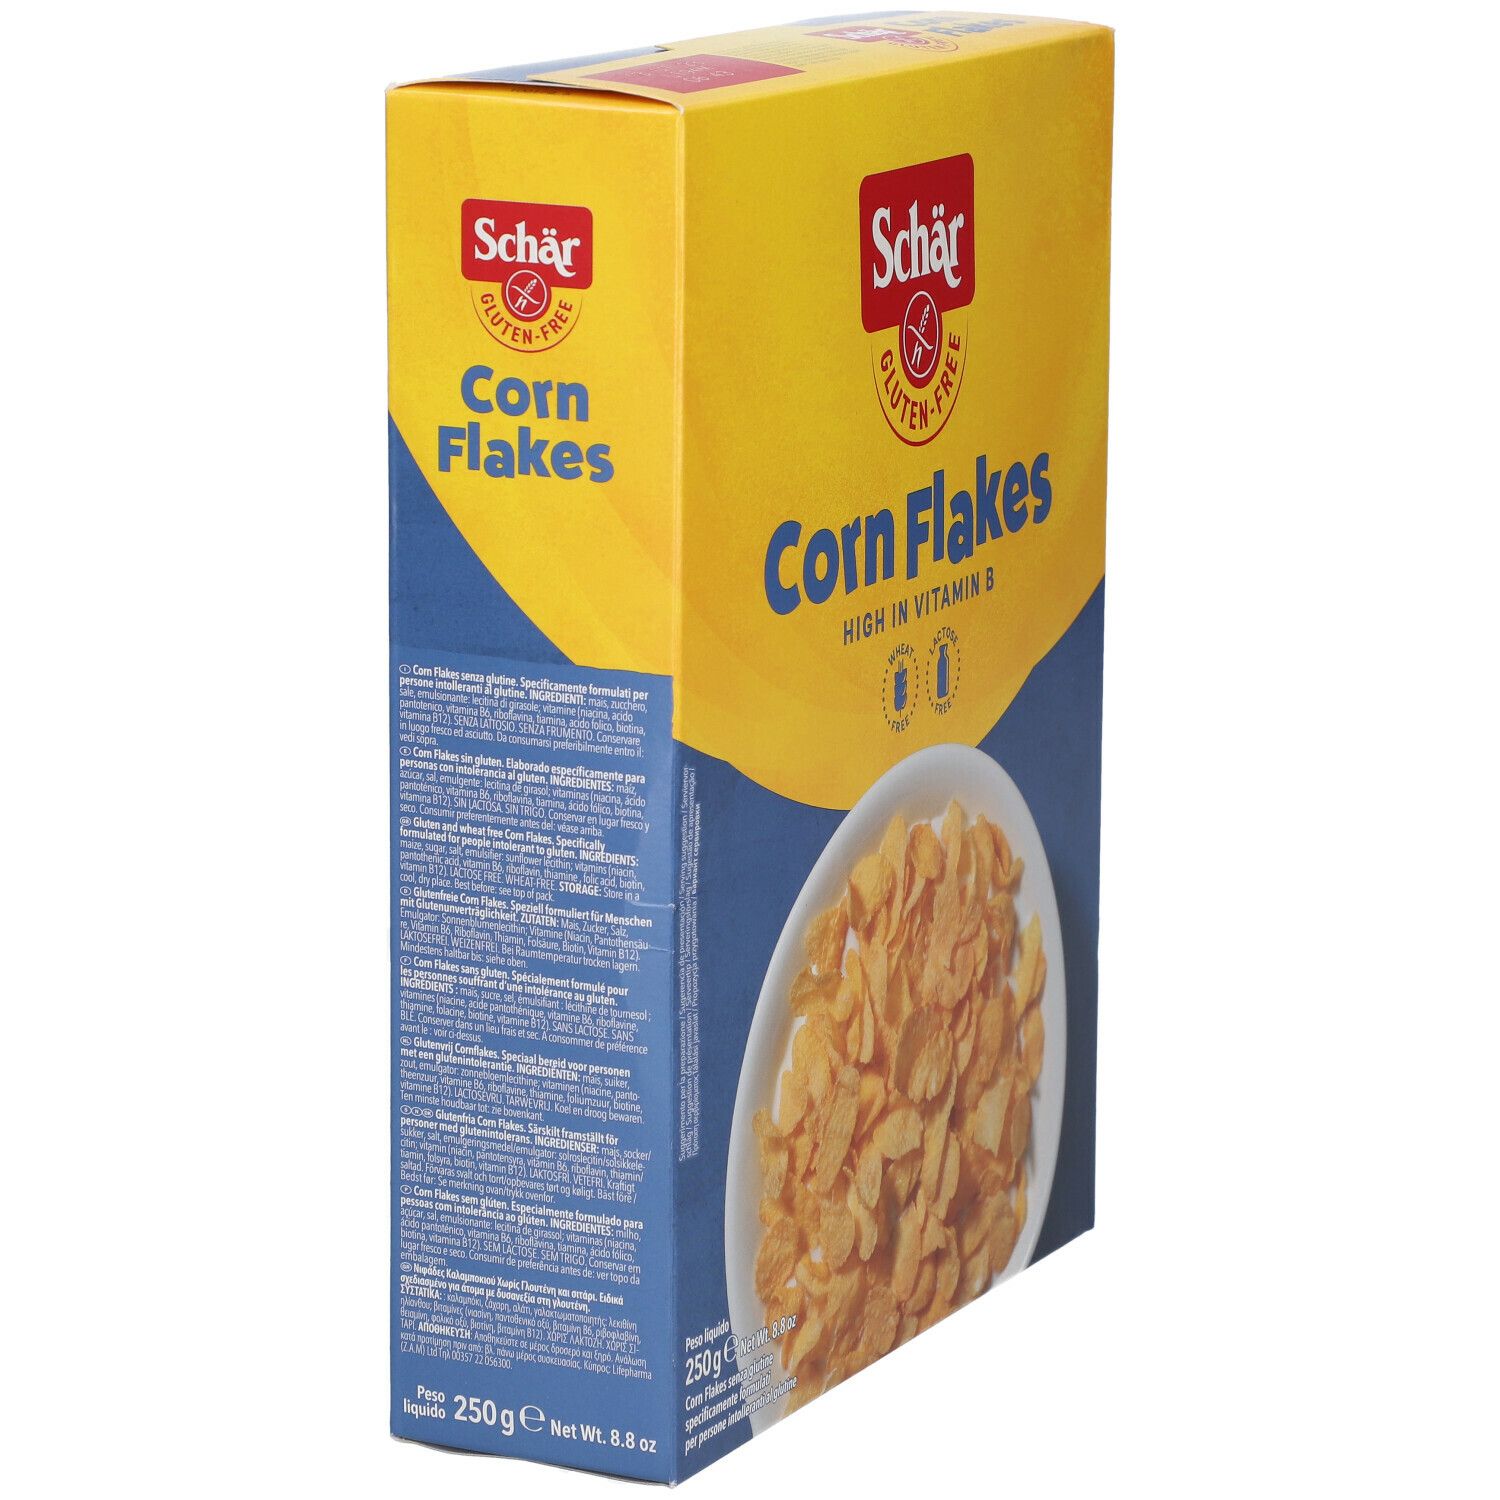 Schär Corn Flakes